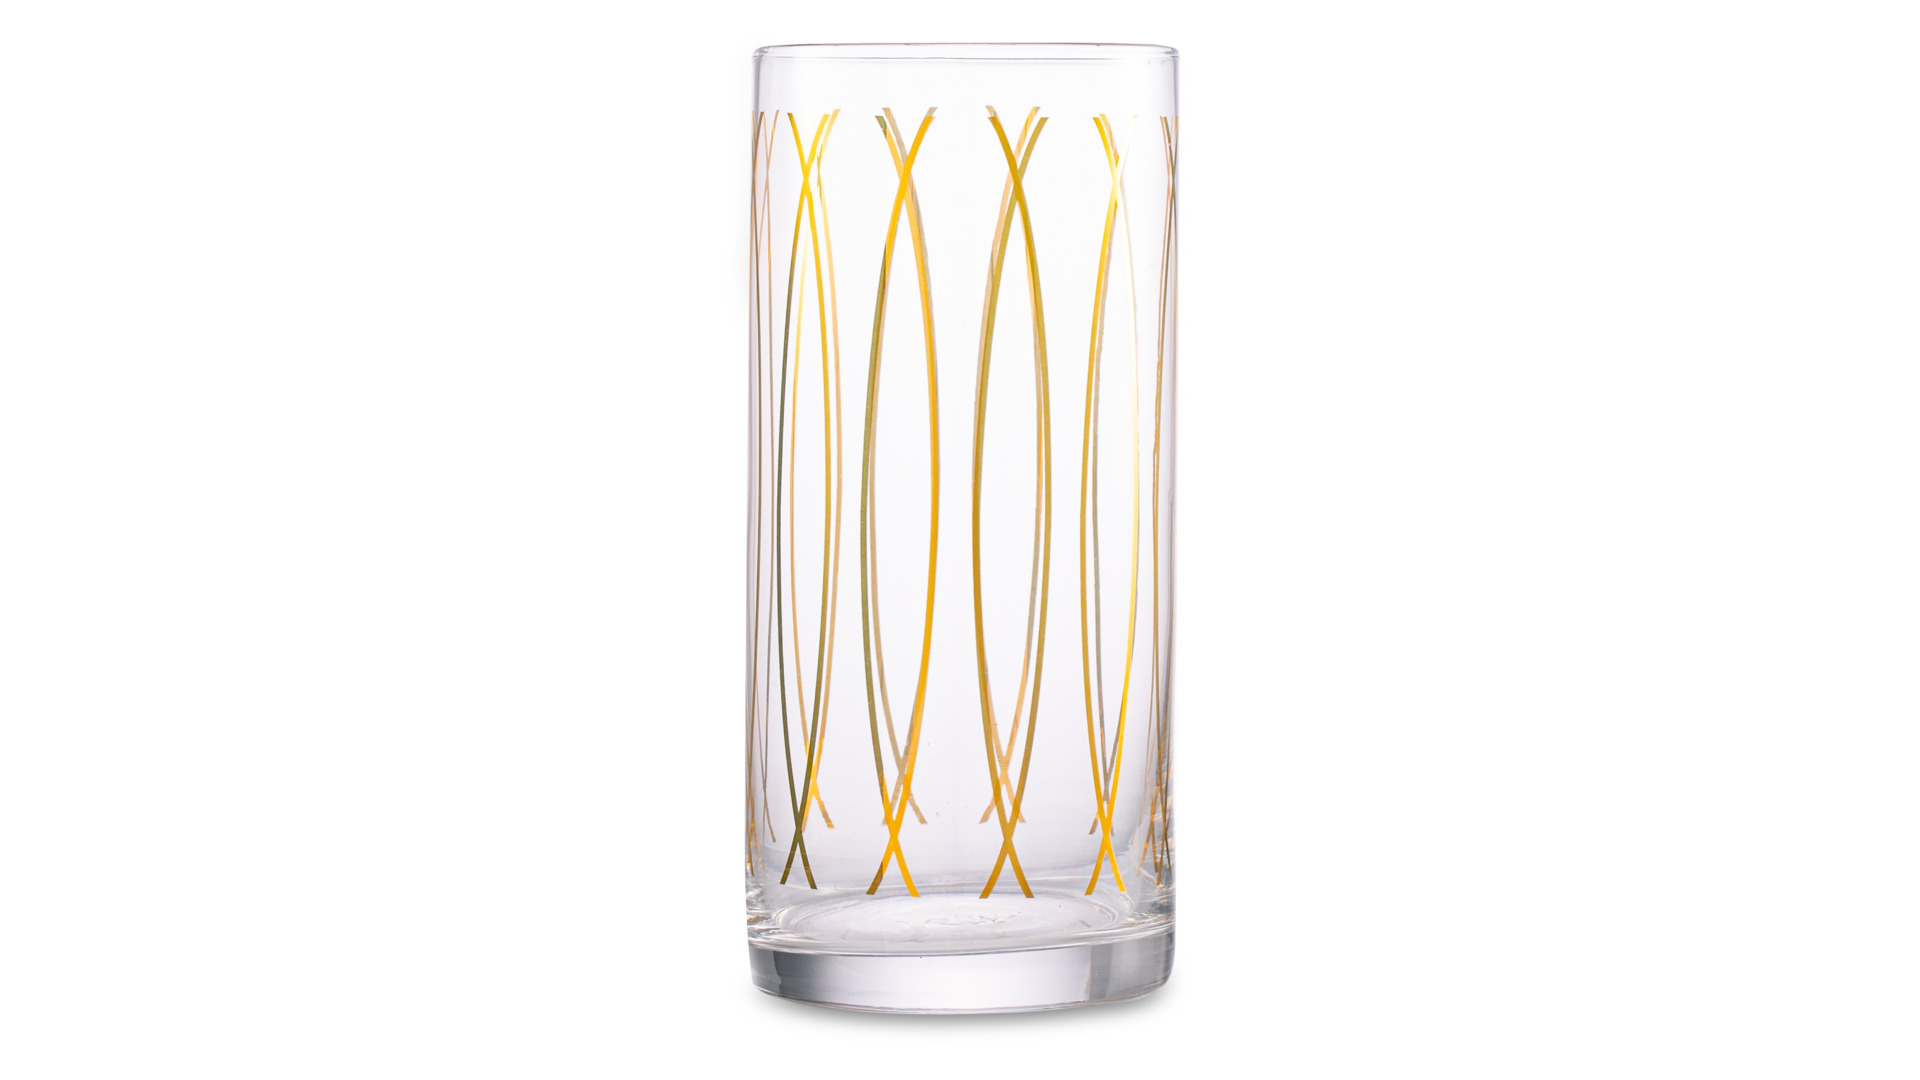 Набор стаканов для воды Mikasa Cheers 470 мл, 4 шт, стекло, золотистый декор, п/к